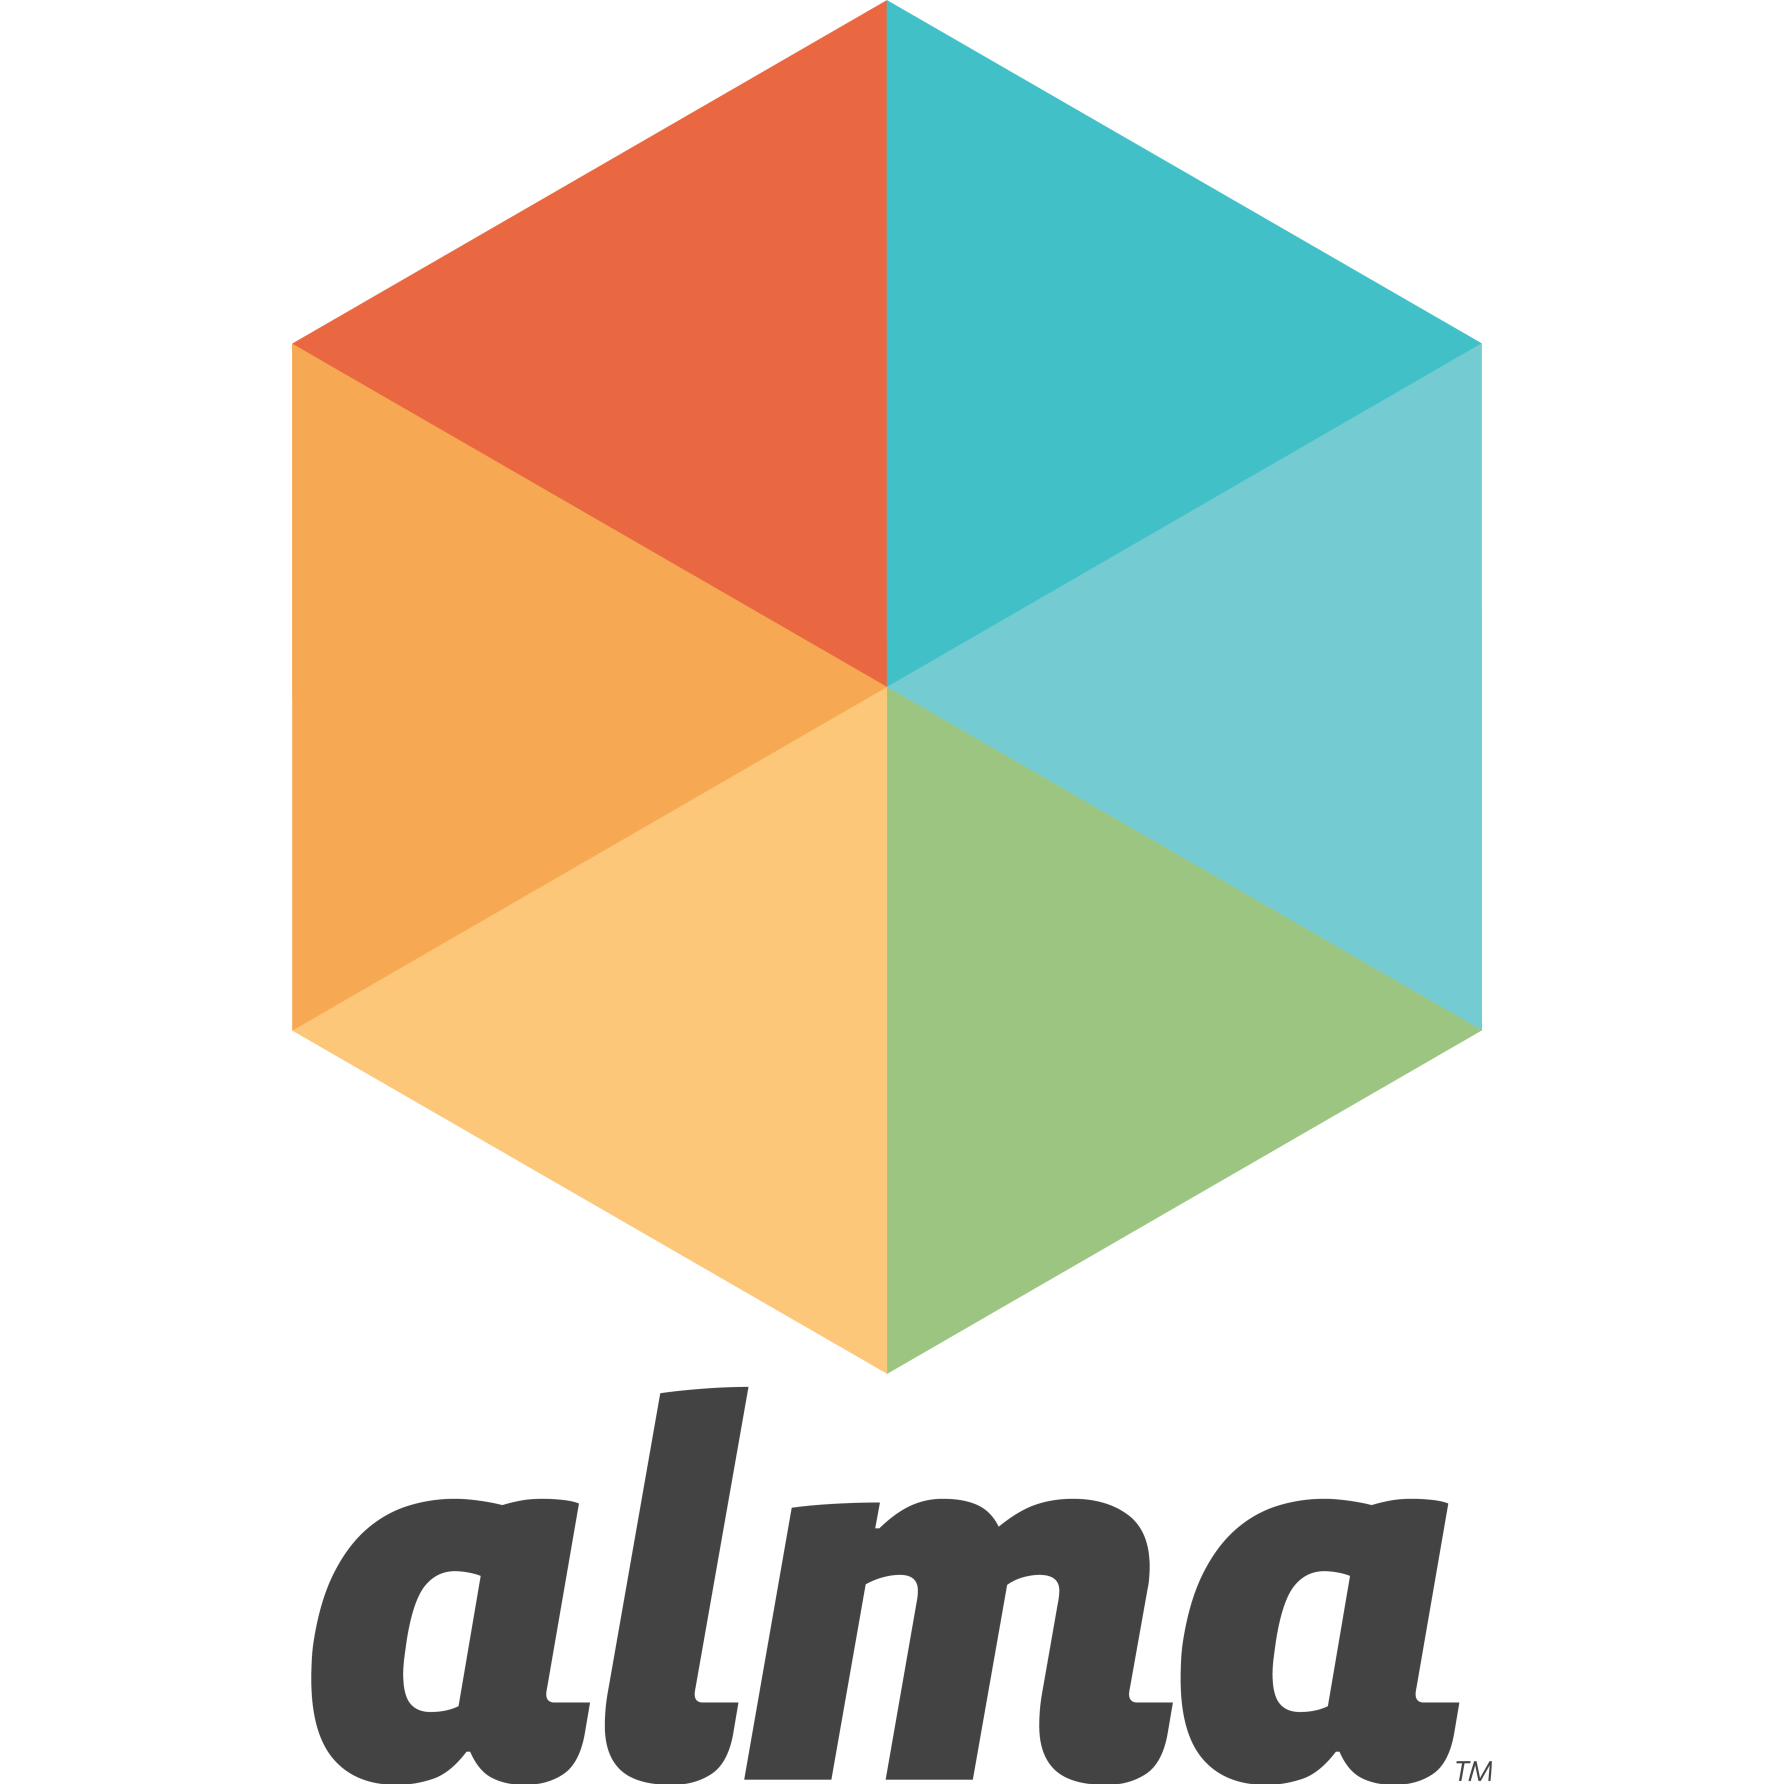 Alma SIS Logo